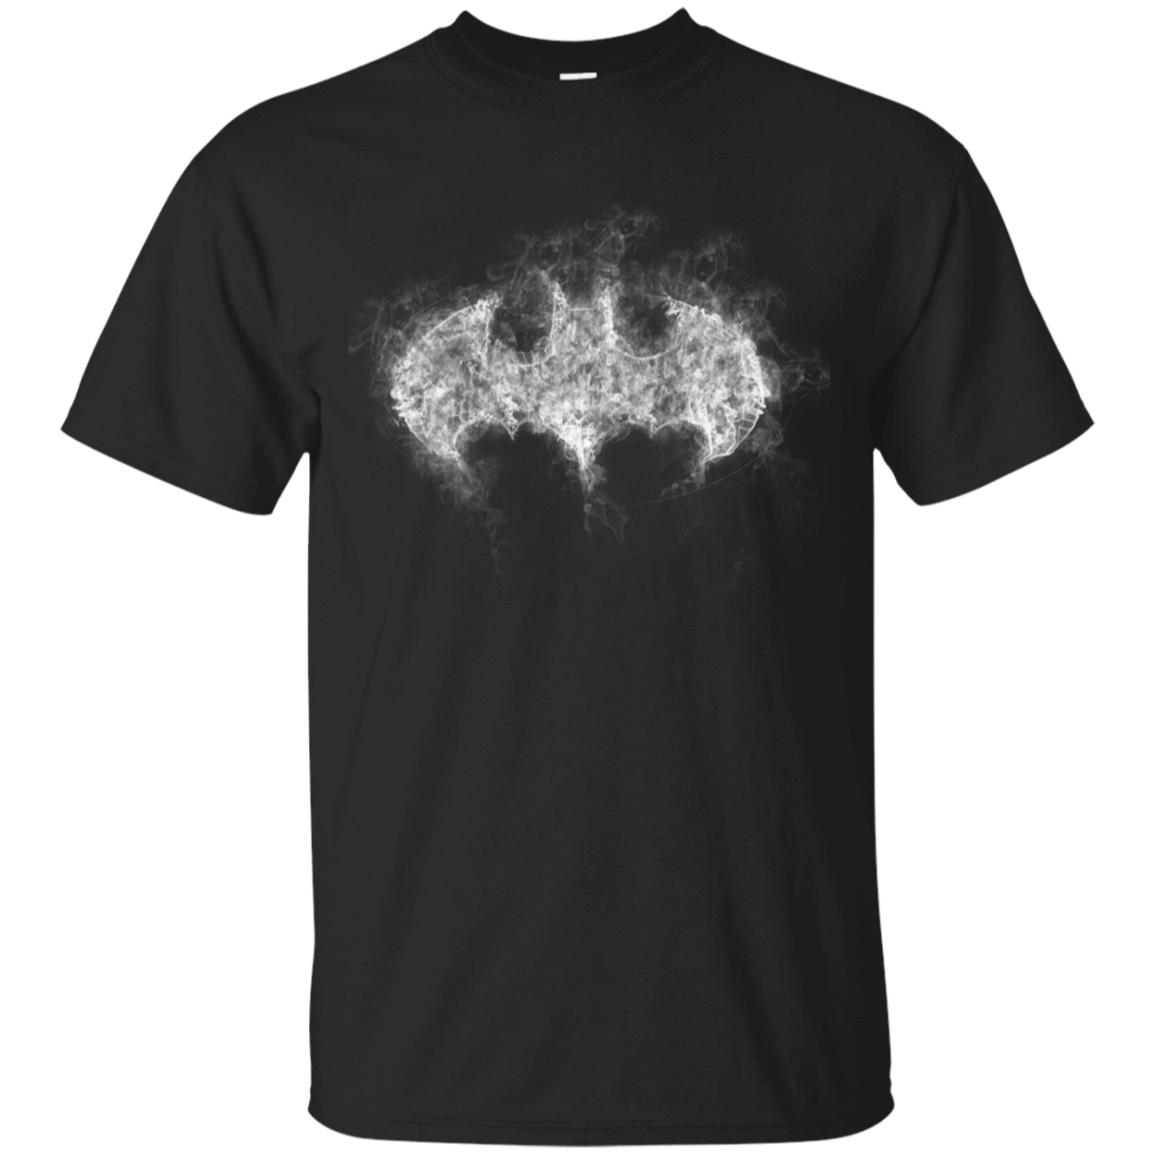 T-Shirts Black / YXS Bat Smoke Youth T-Shirt